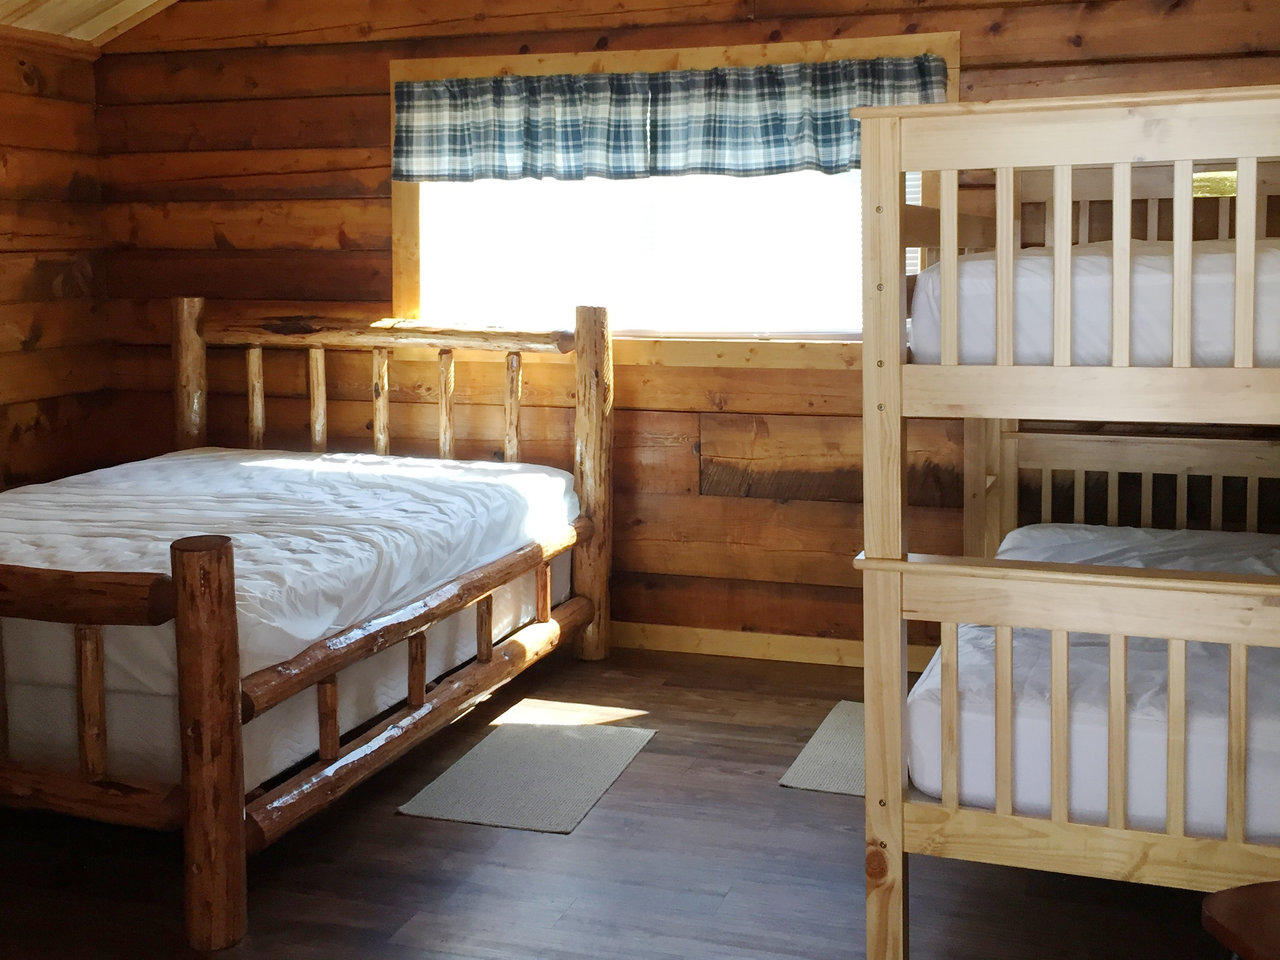 Kintla cabin sleeping area.